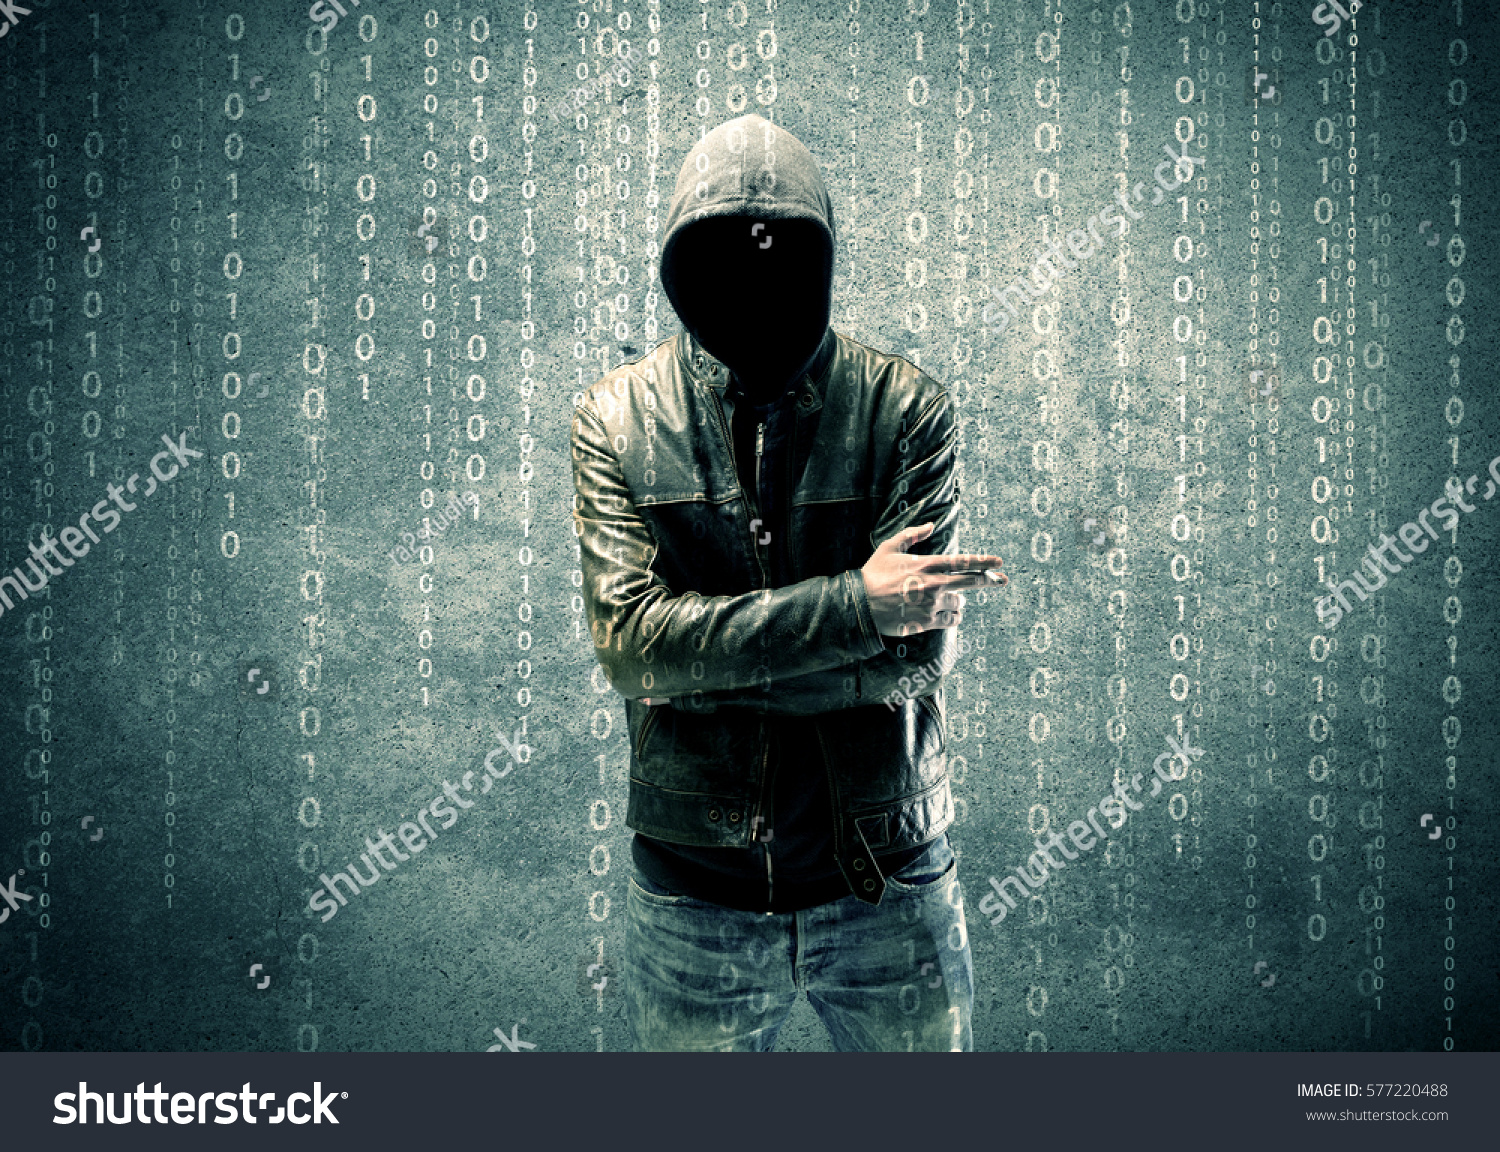 powerpoint-template-adult-online-anonymous-internet-hacker-moojjhlpp